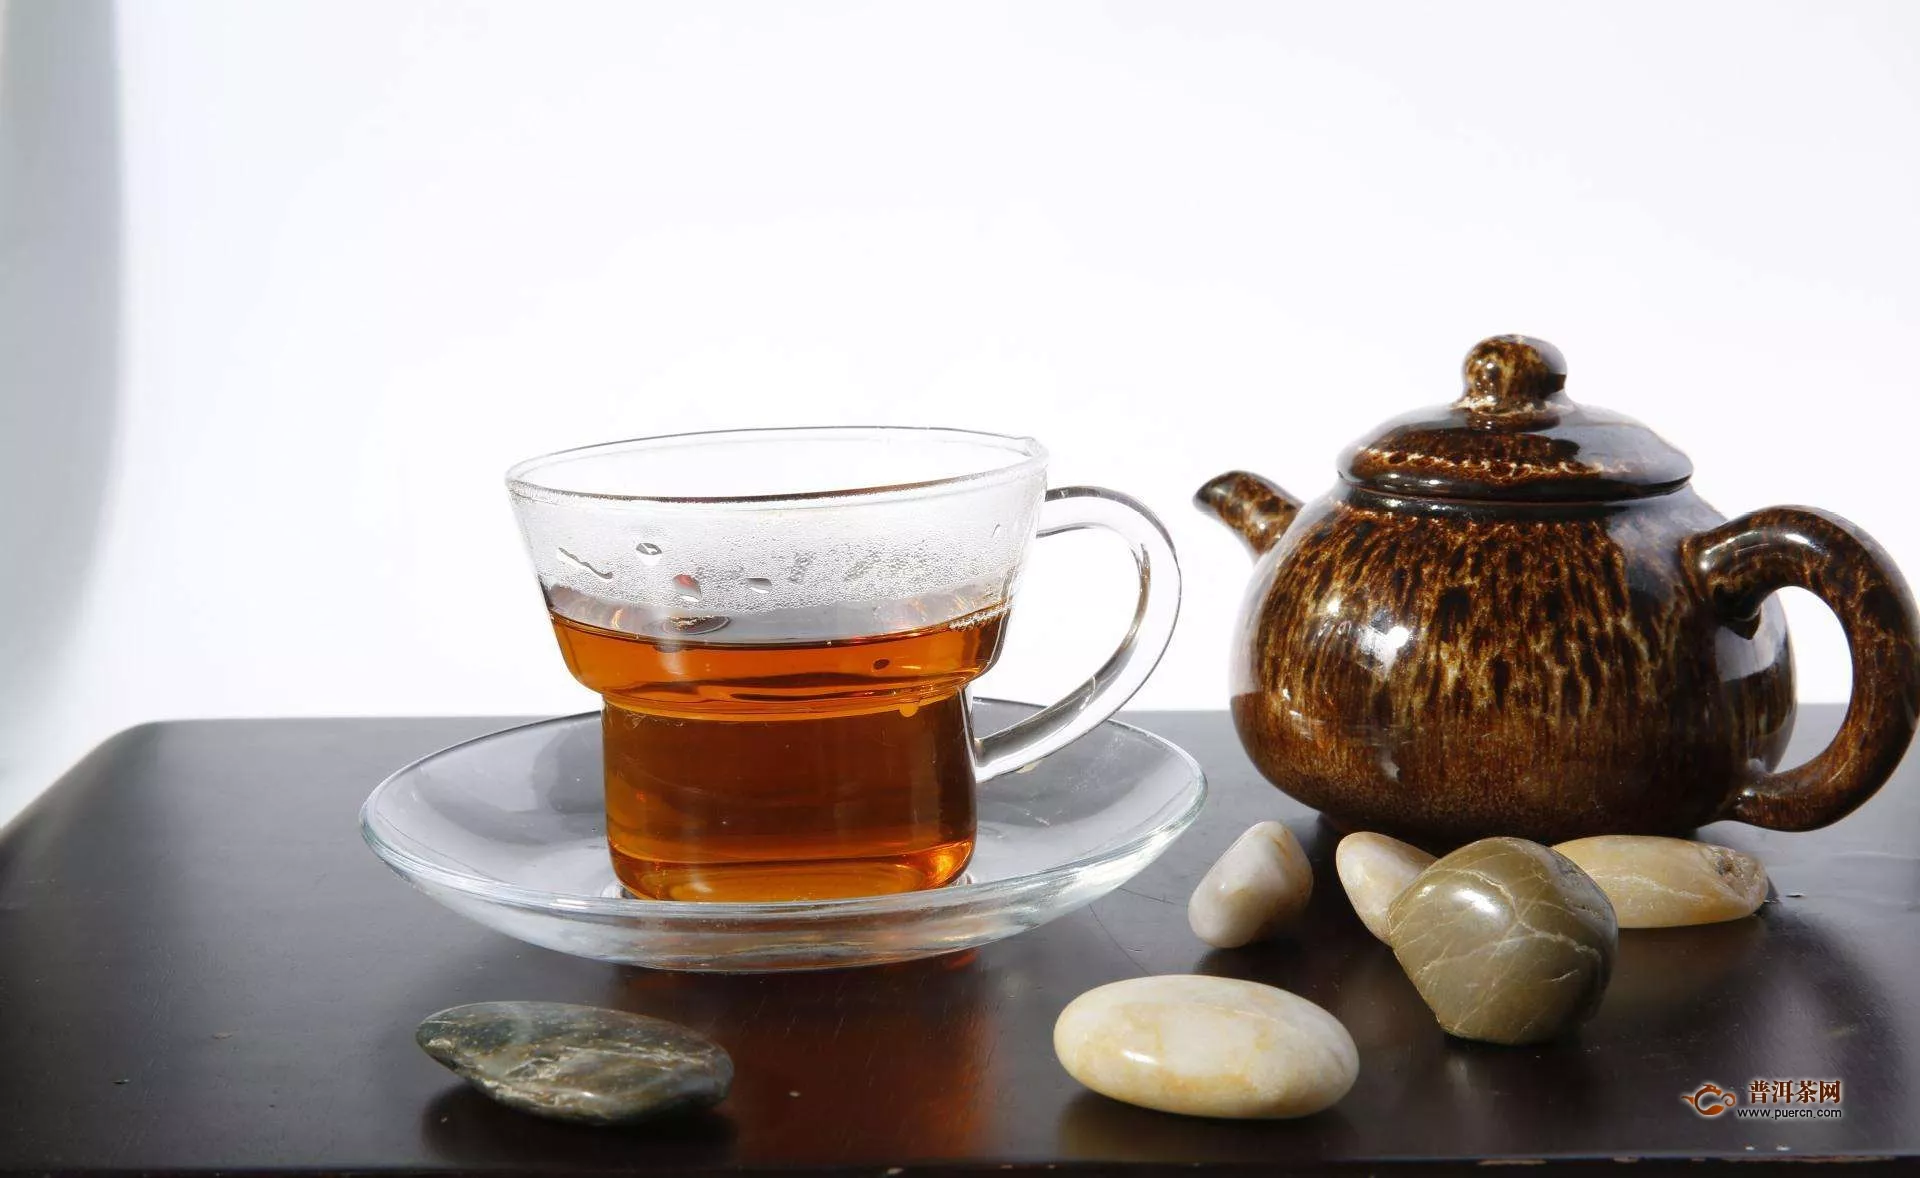 盖碗红茶茶艺程序，13个步骤完美演绎!